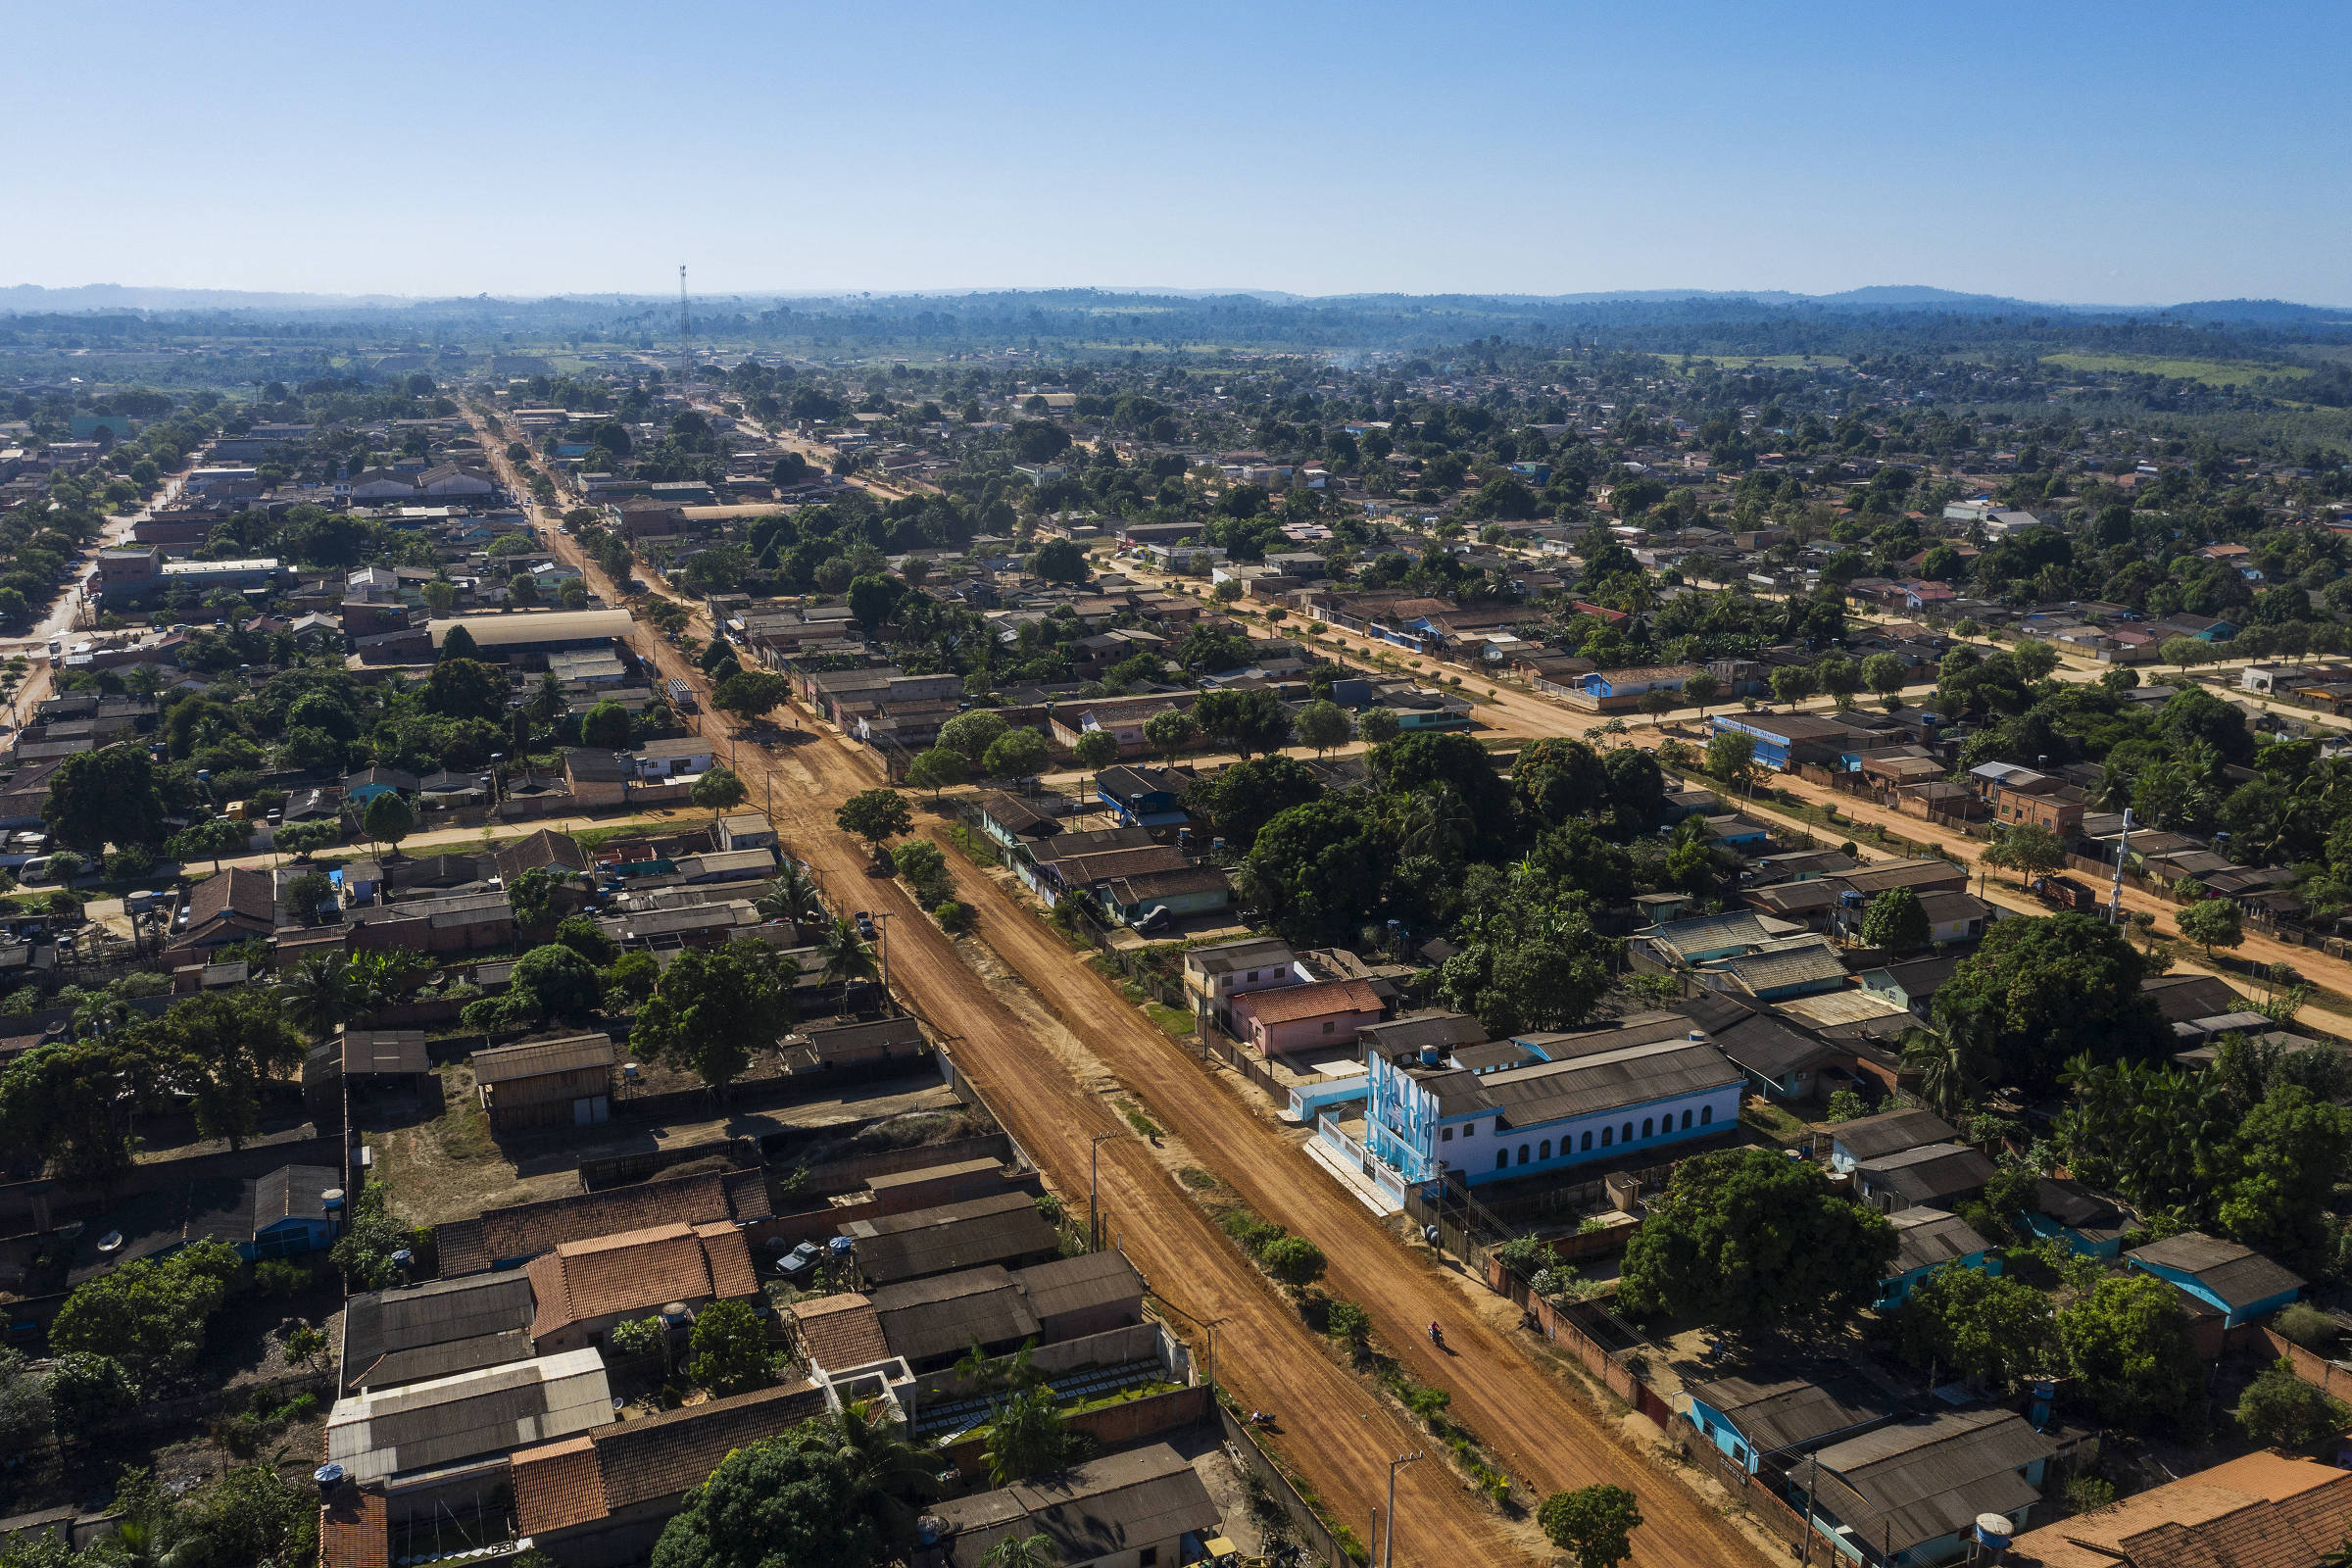 Vista aérea da cidade de Uruará, que fica às margens da rodovia Transamazônica